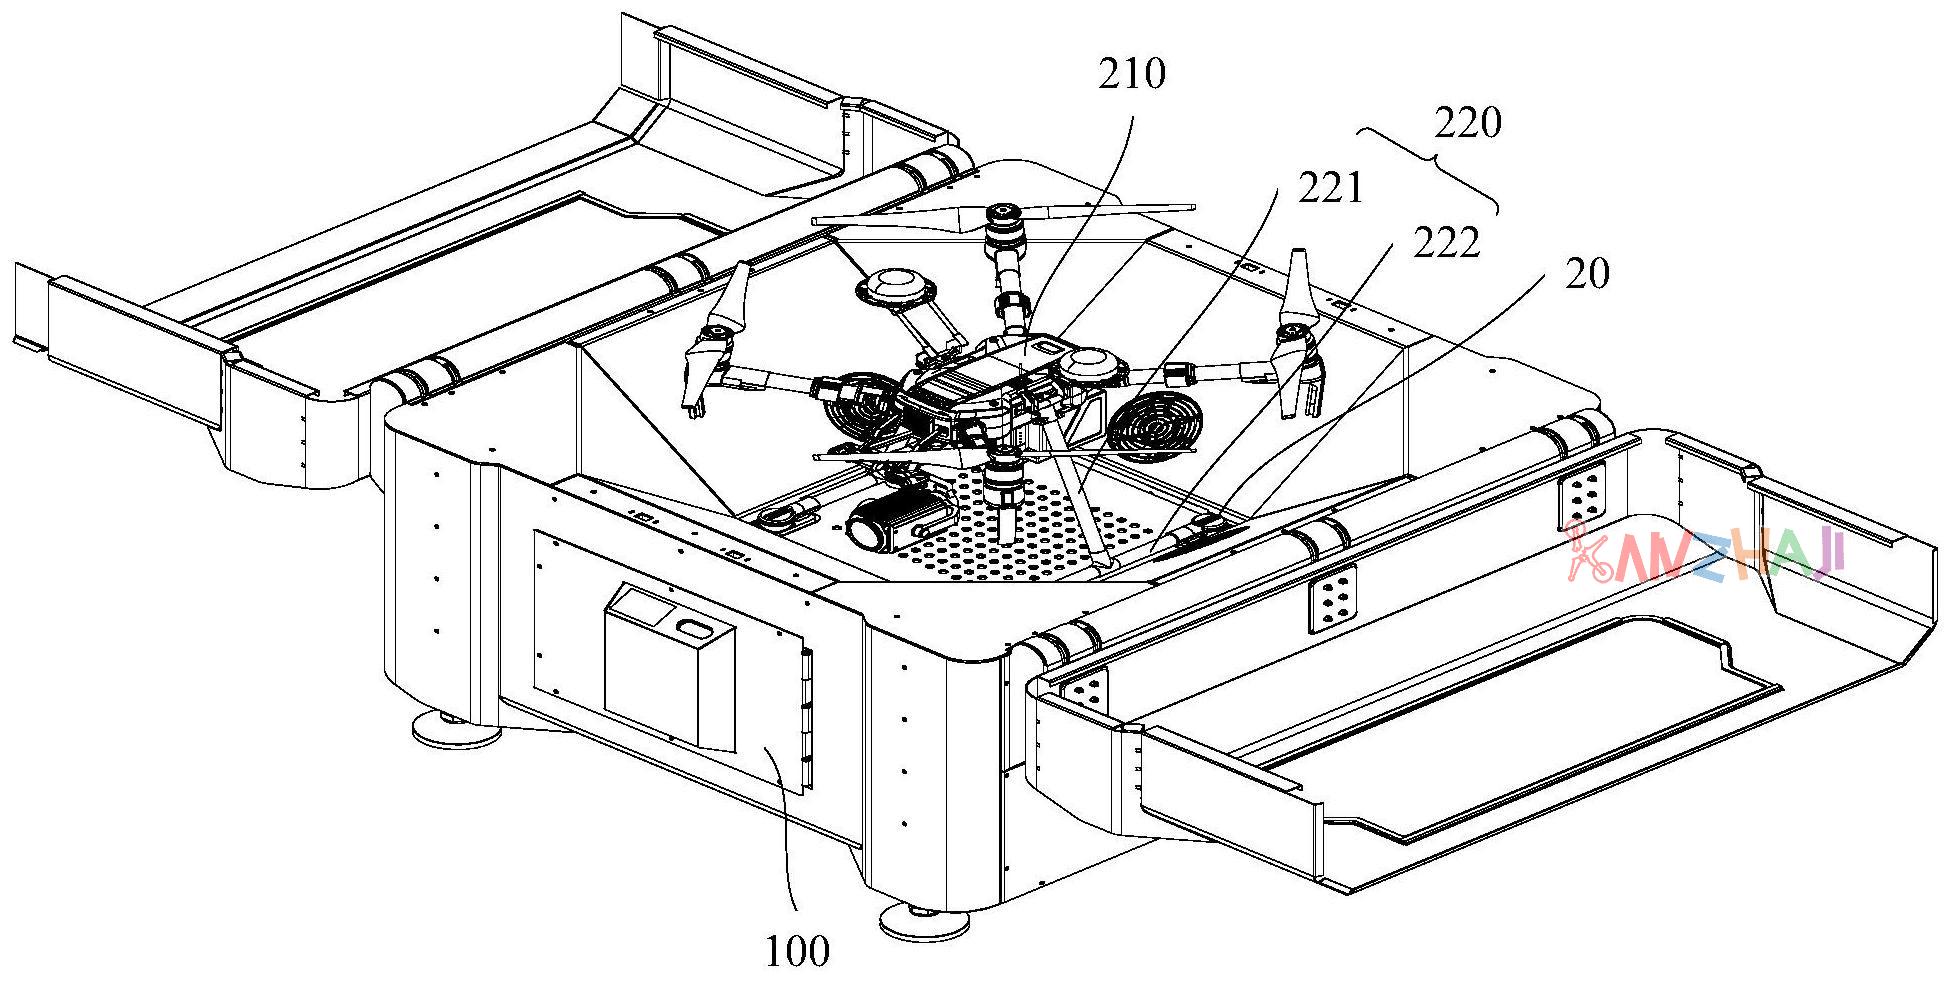 DJI 大疆创新的无人机机库专利公布